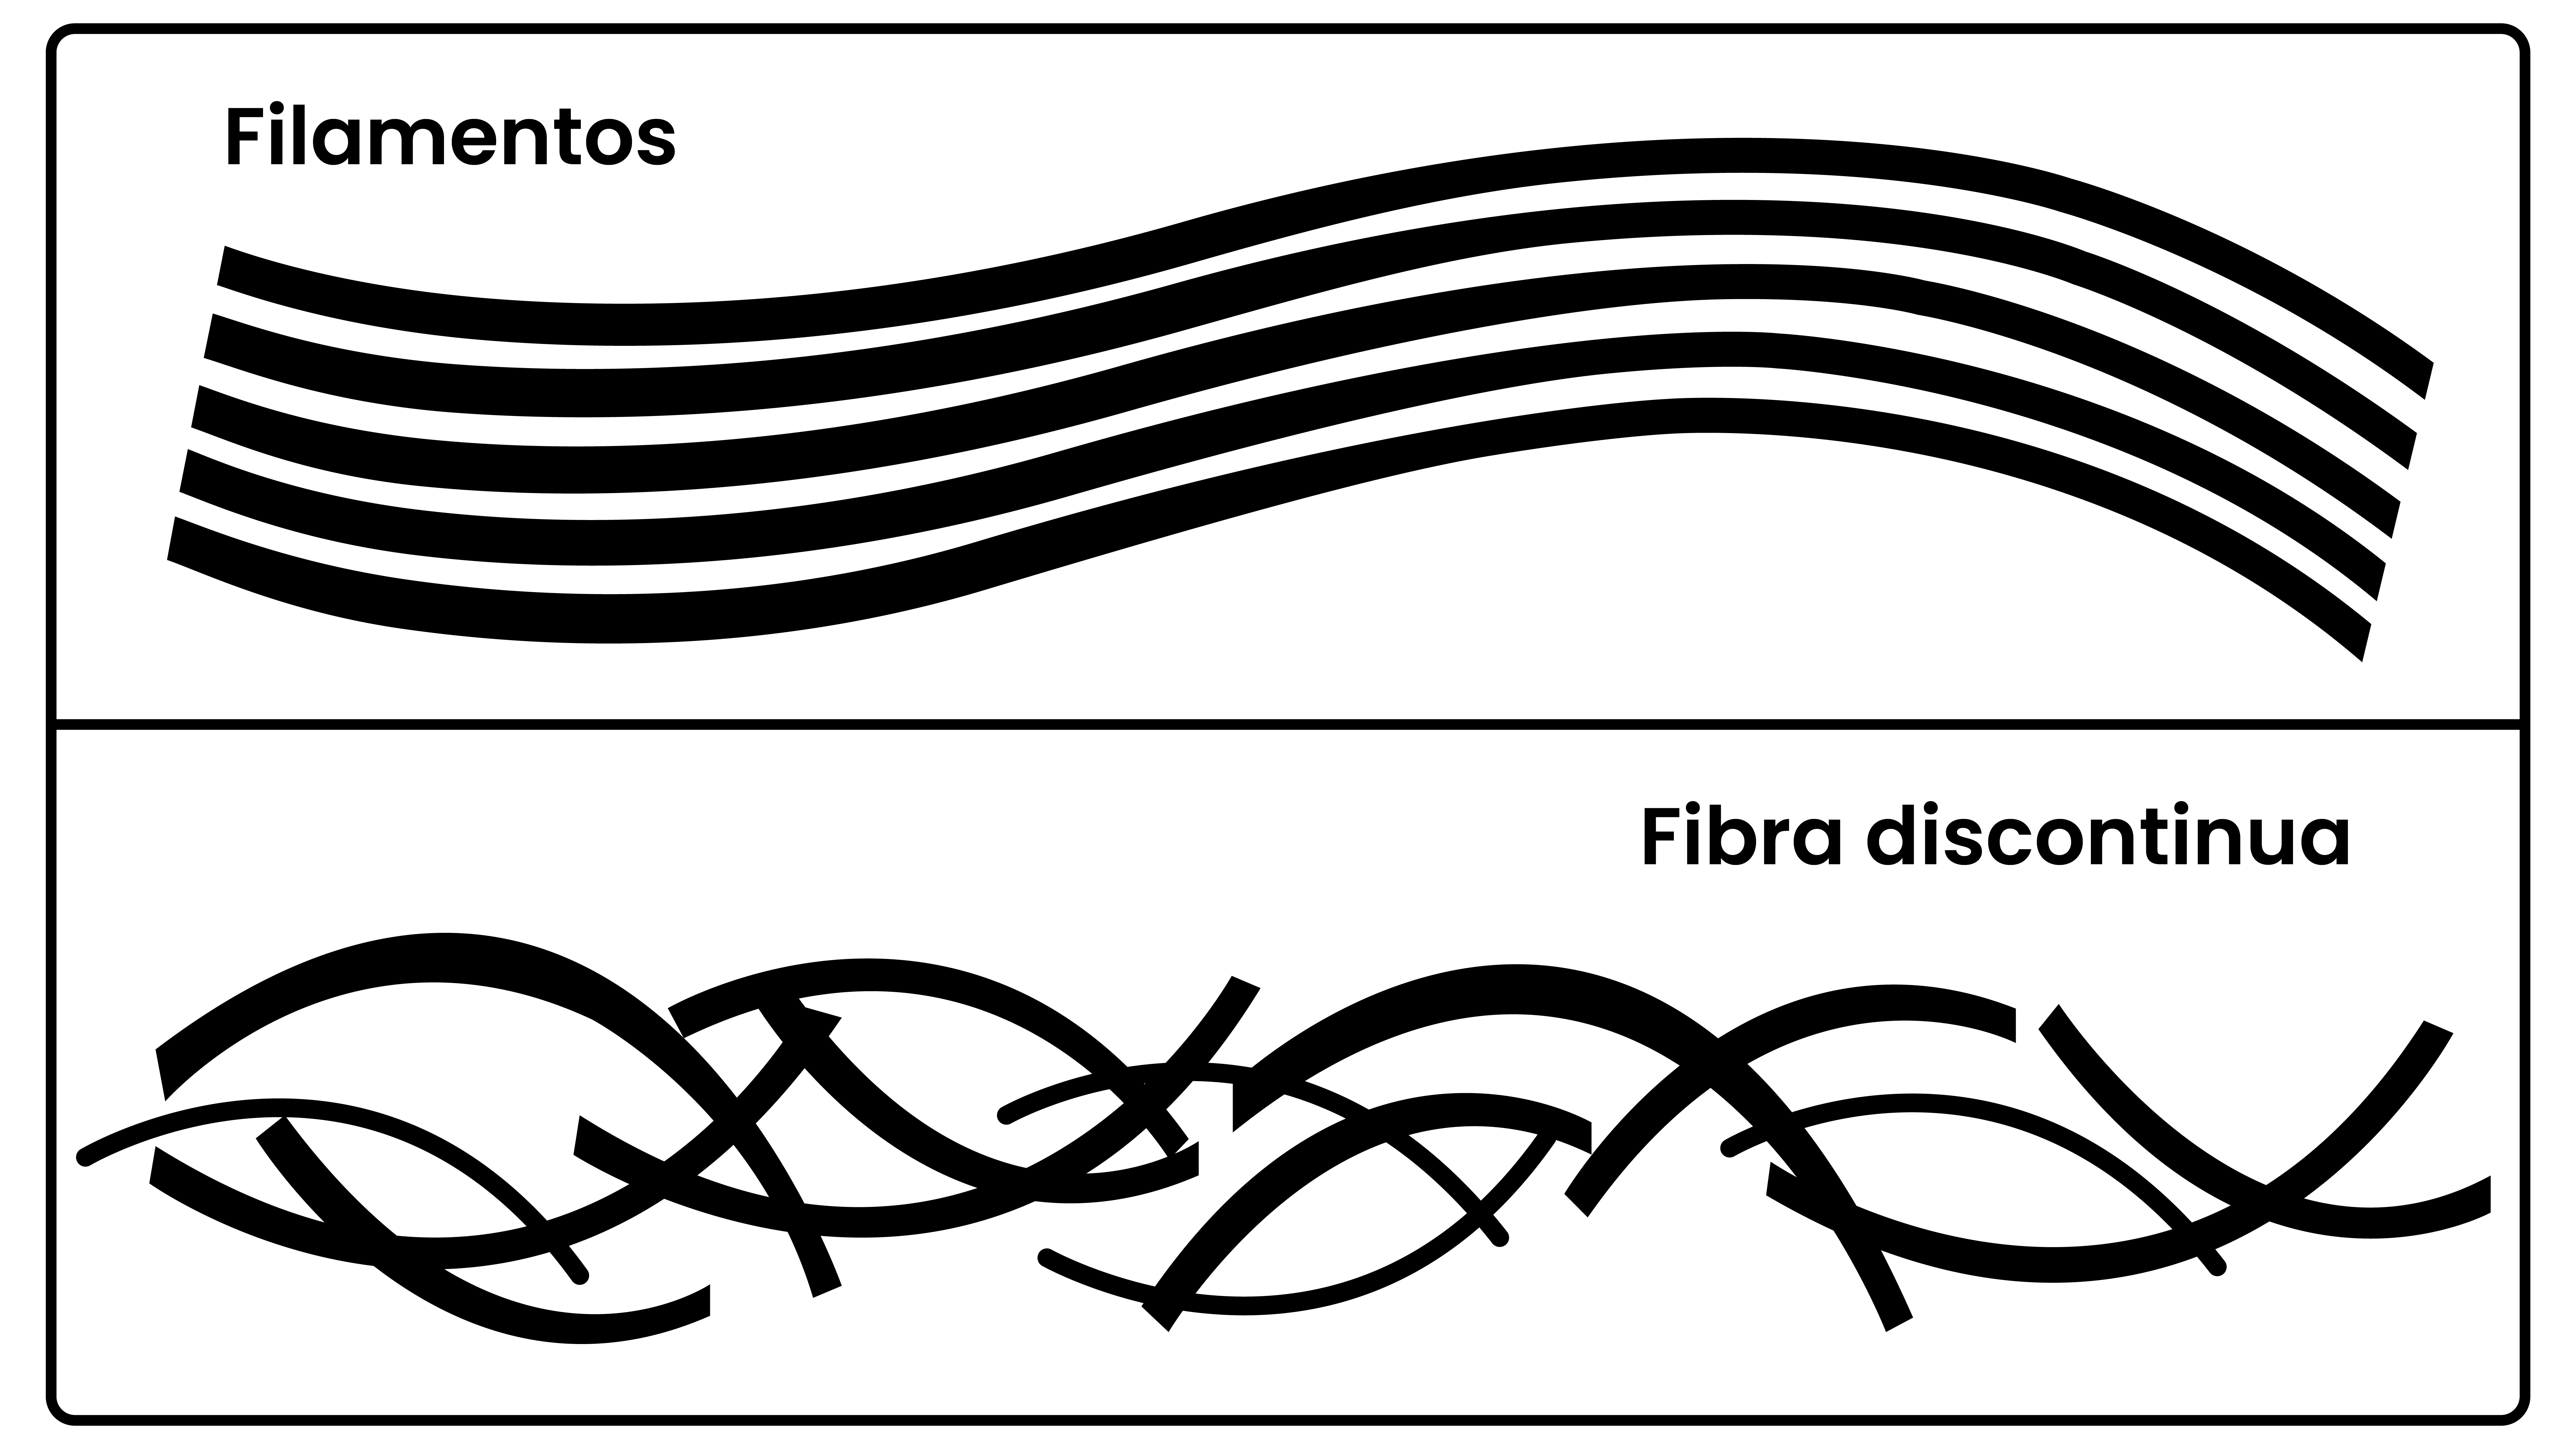  Diferencia entre el filamento del raso y la fibra discontinua del satén